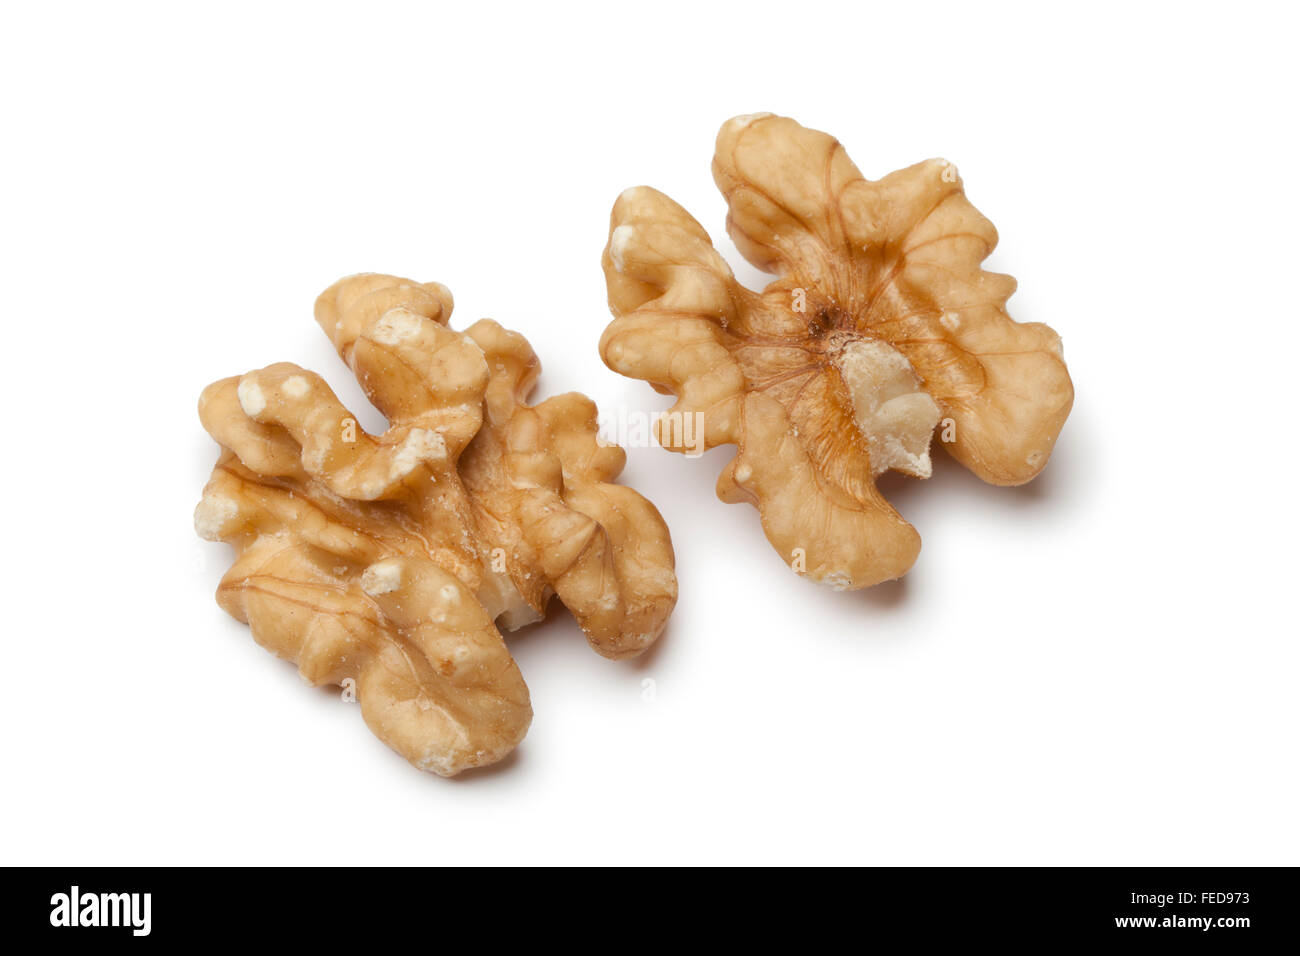 Peeled walnuts on white background Stock Photo